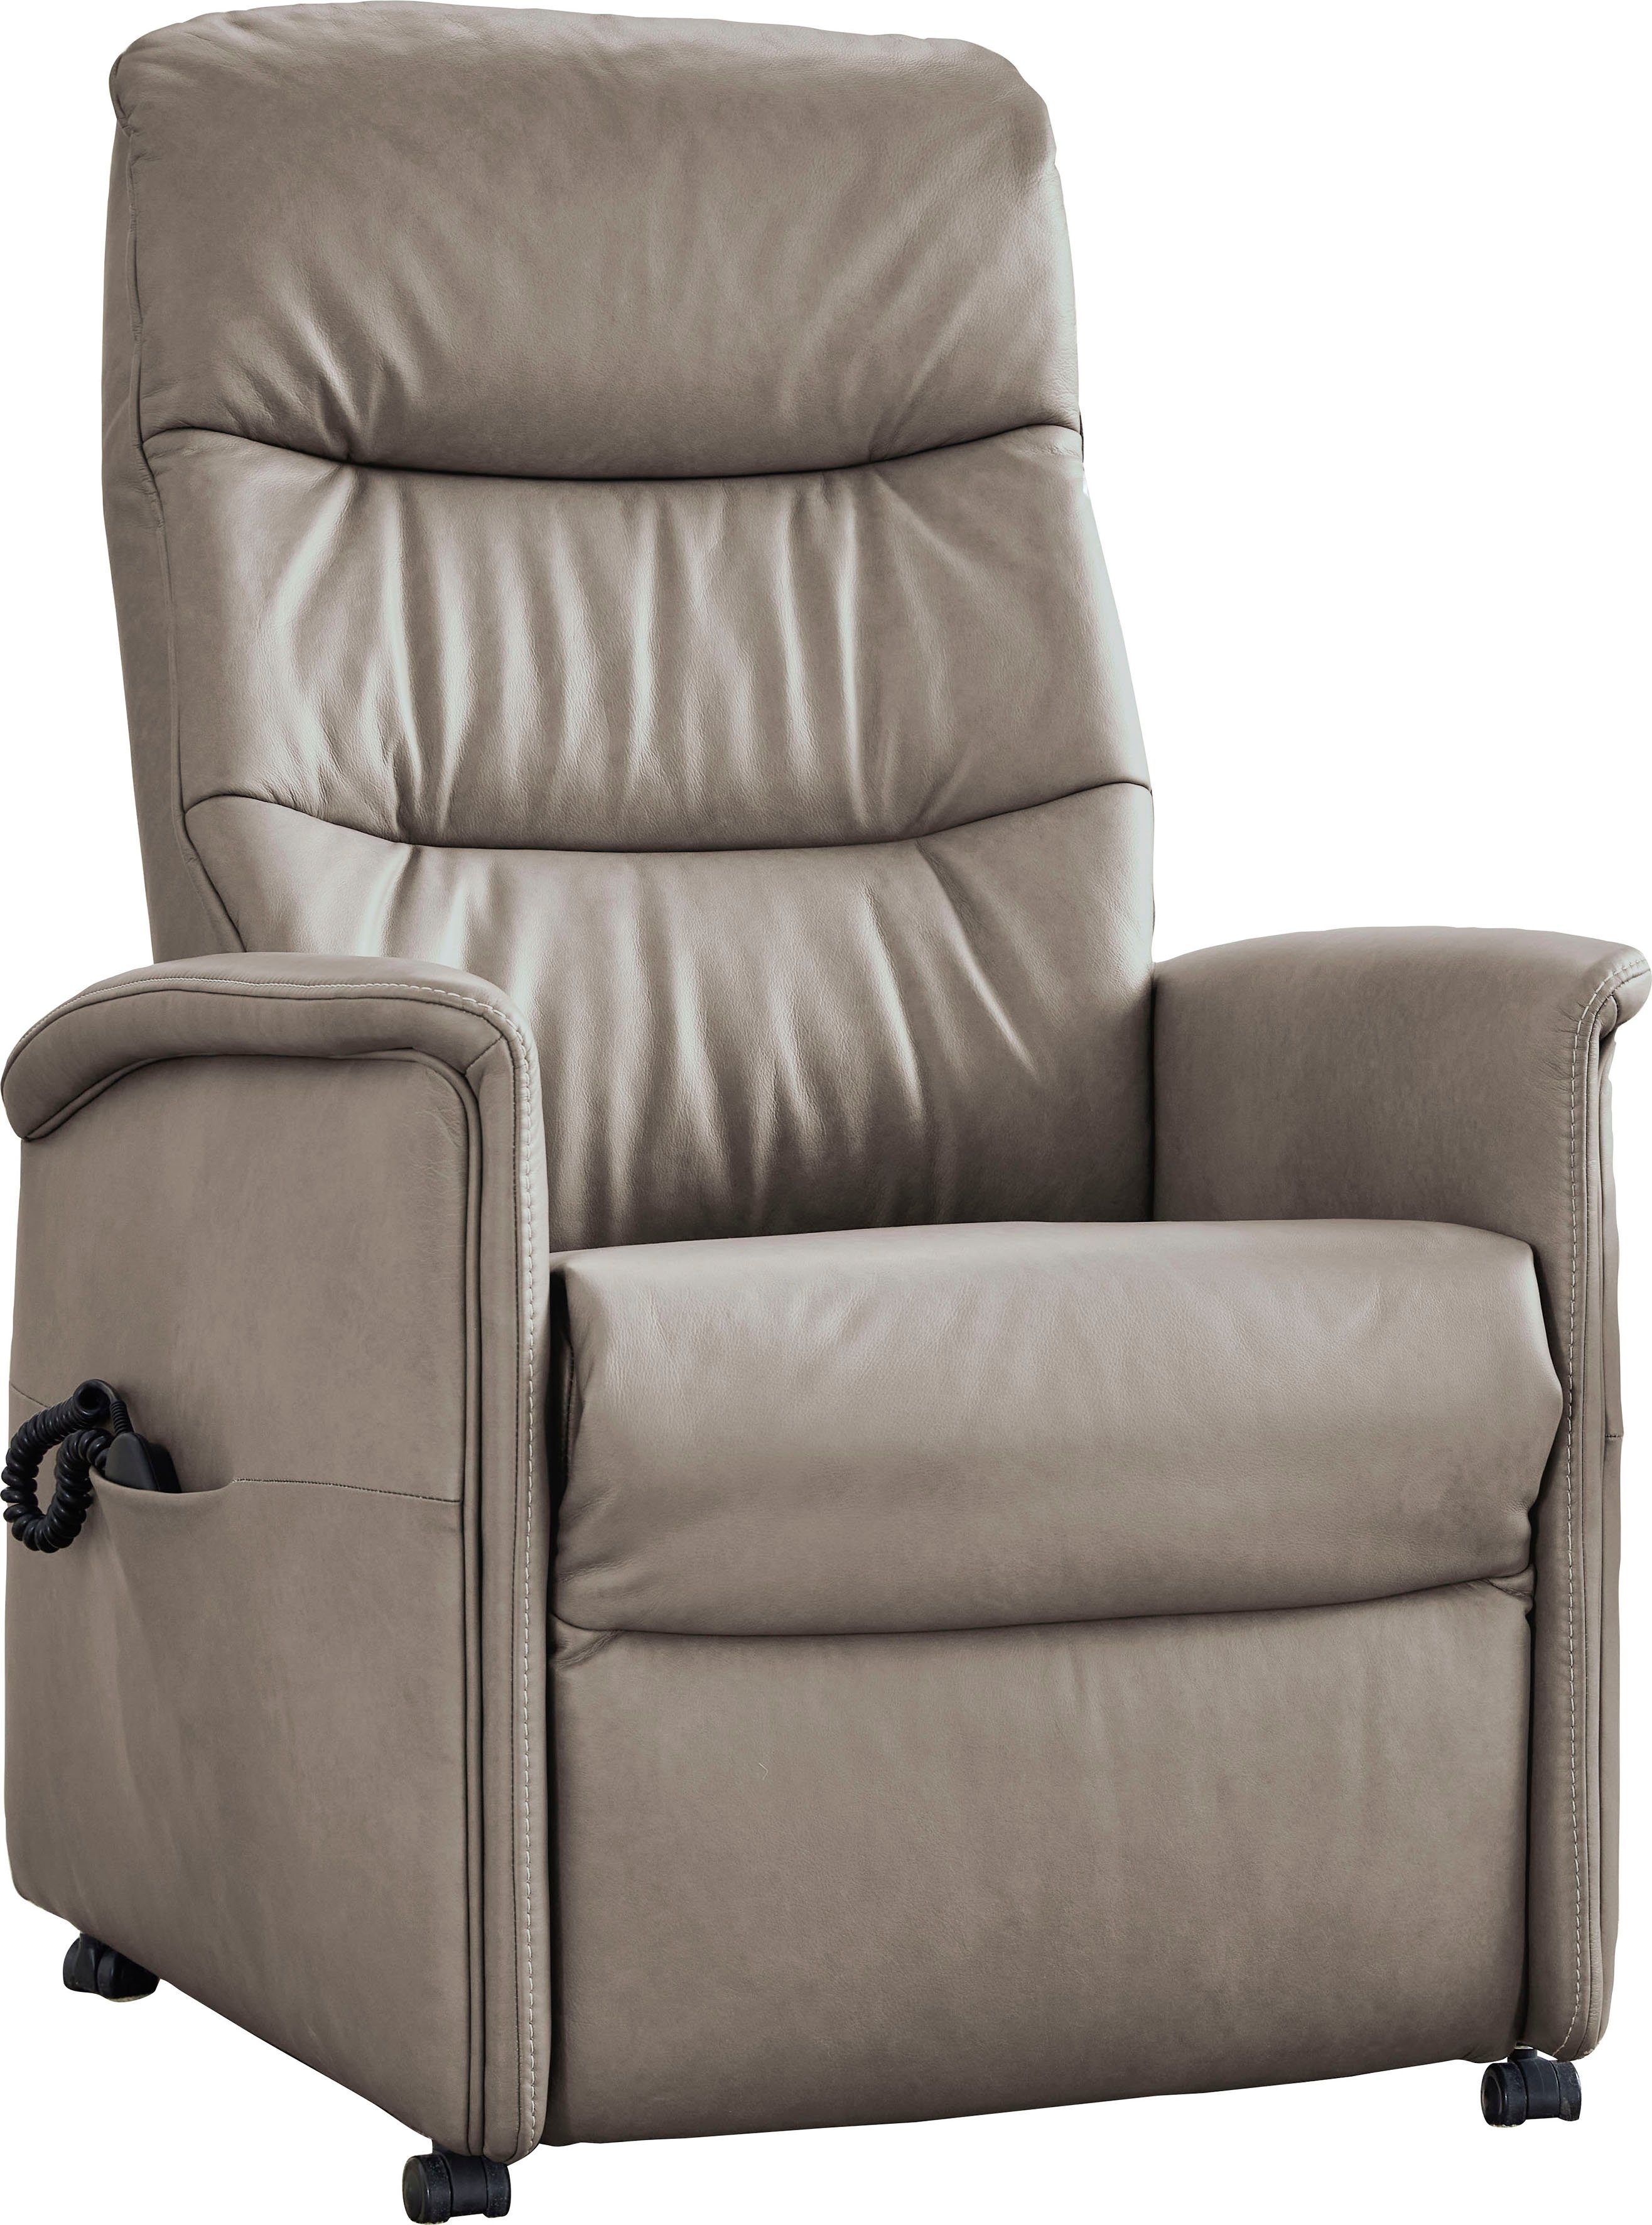 verstellbar, himolla in manuell elektrisch Aufstehhilfe Relaxsessel oder 3 Sitzhöhen, 9051, himolla